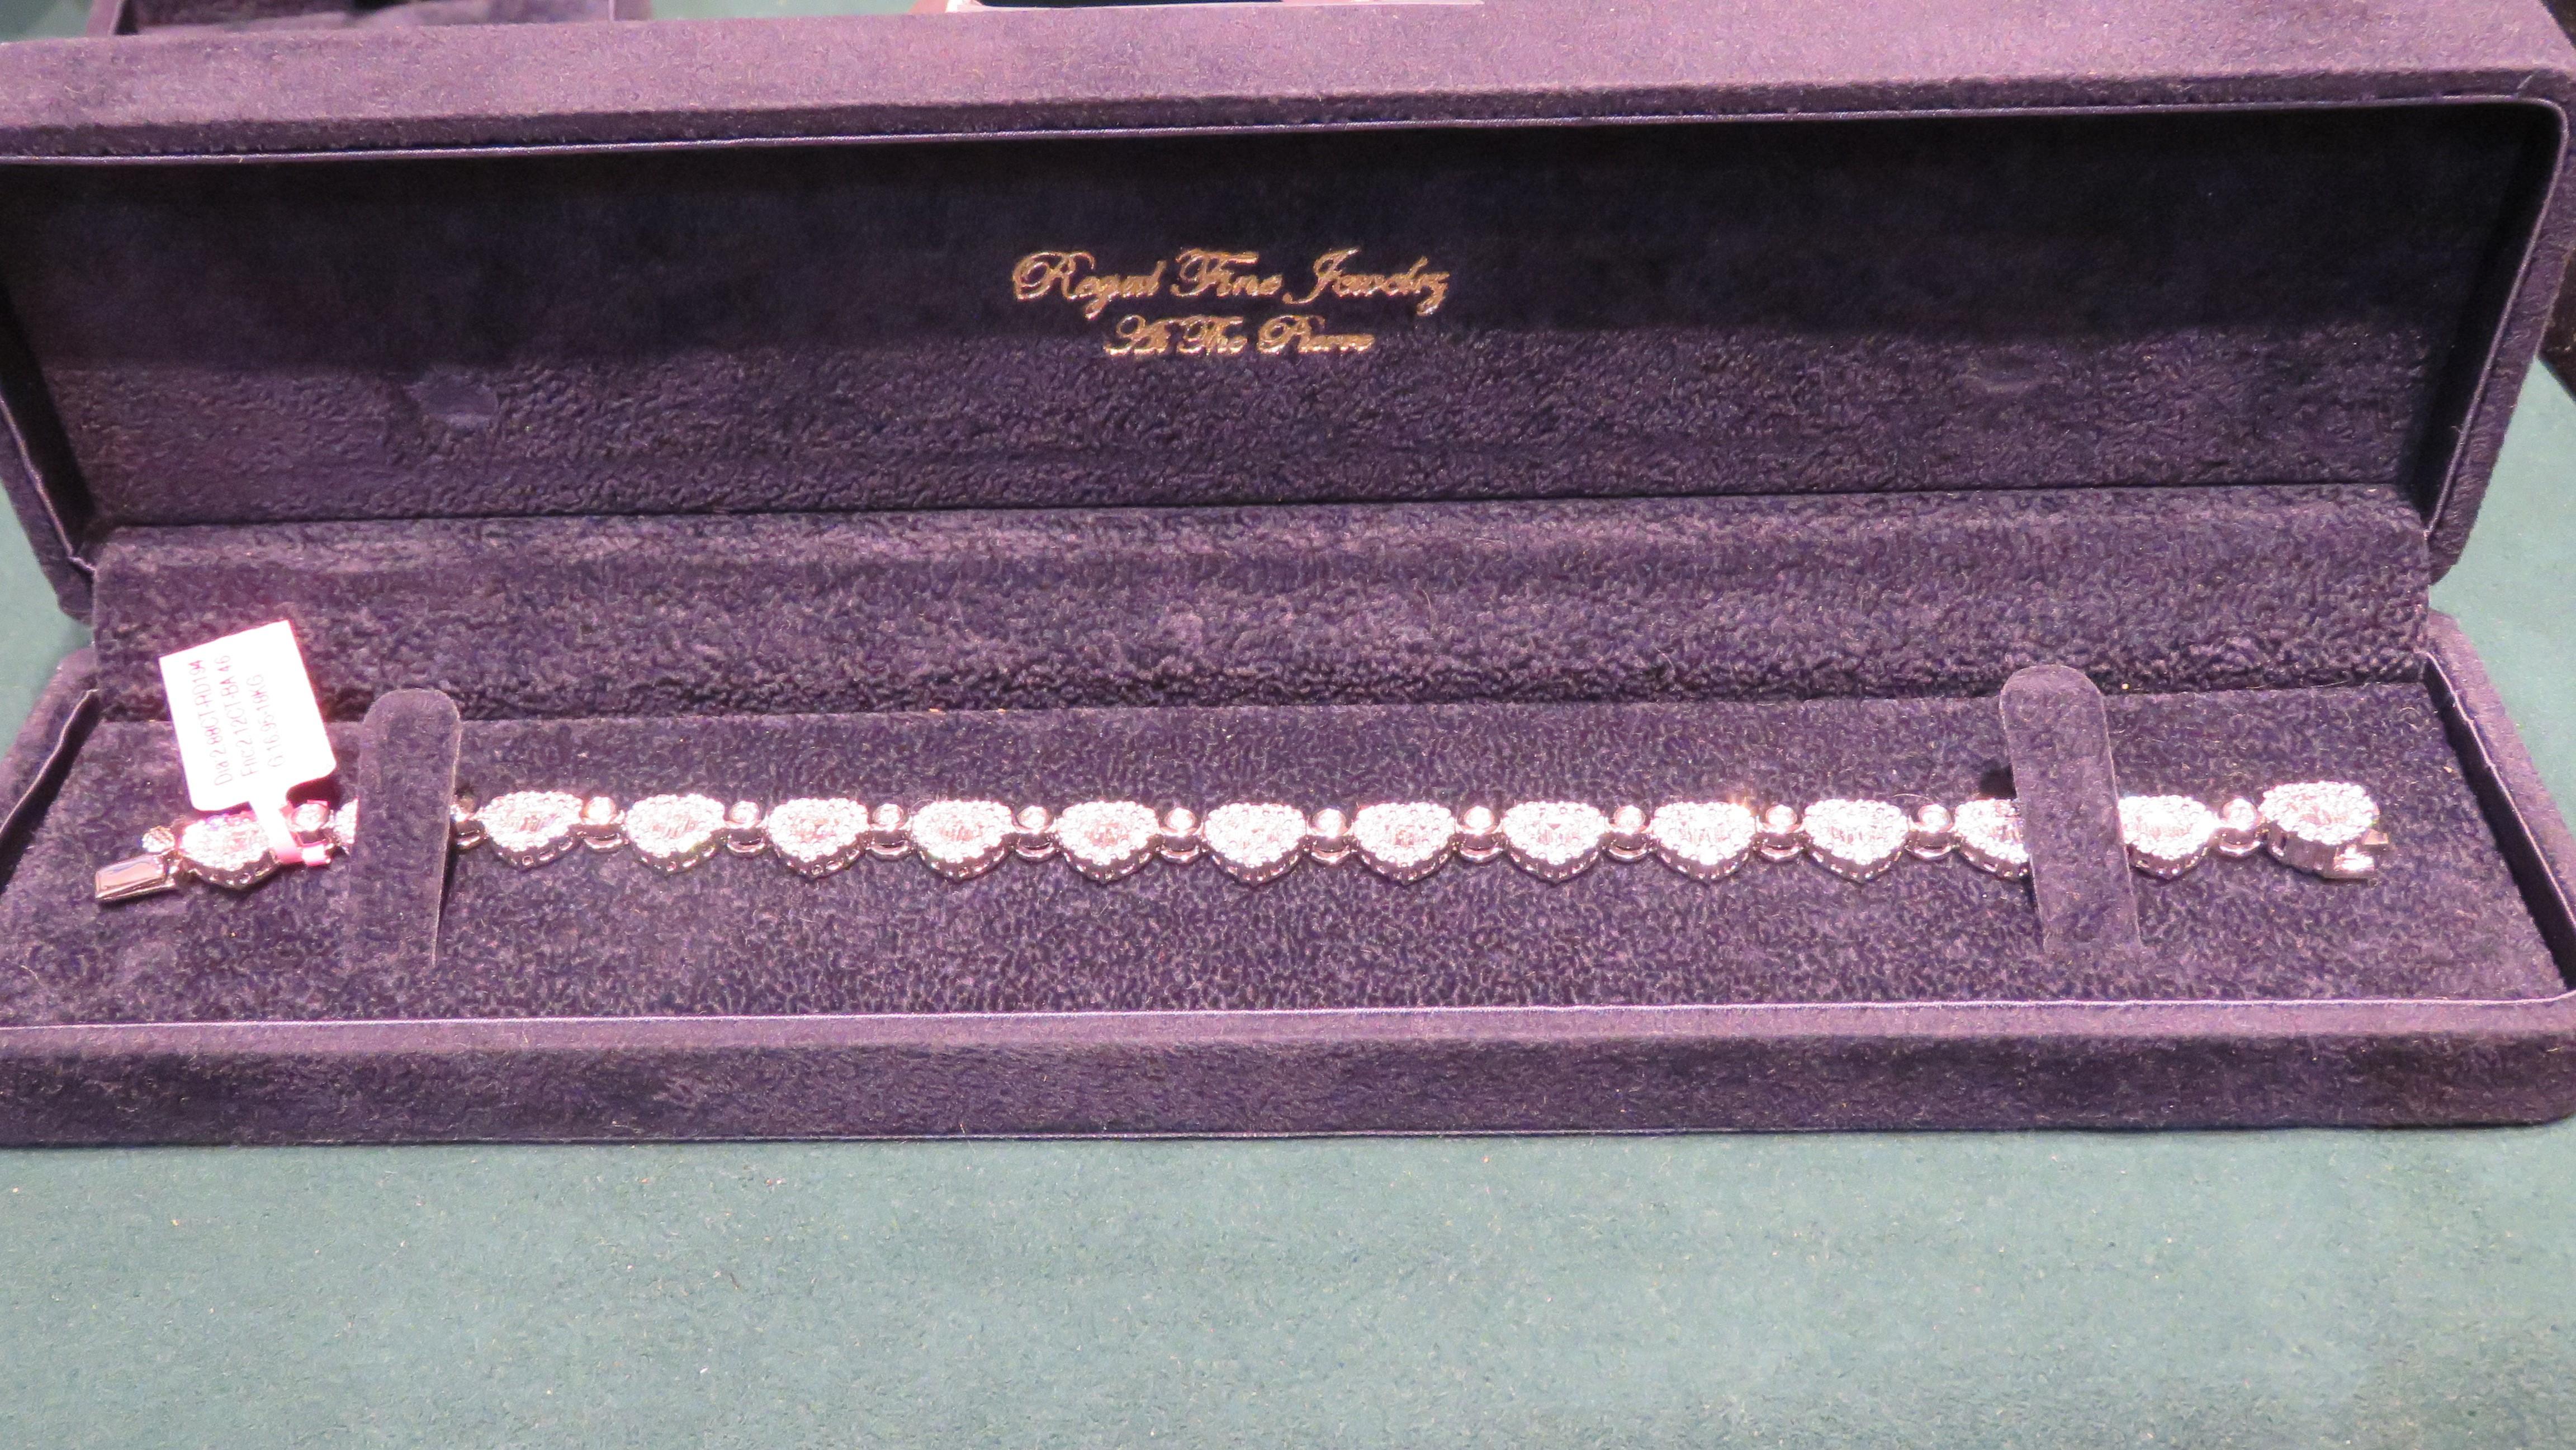 
Der folgende Artikel, den wir anbieten, ist ein seltenes 18KT Gold Heart Shaped Diamond Tennis Bracelet. Das Armband besteht aus fein gefassten, wunderschön glitzernden Diamanten. T.C.W. Over 5CTS. Die Diamanten sind von exquisiter und feiner